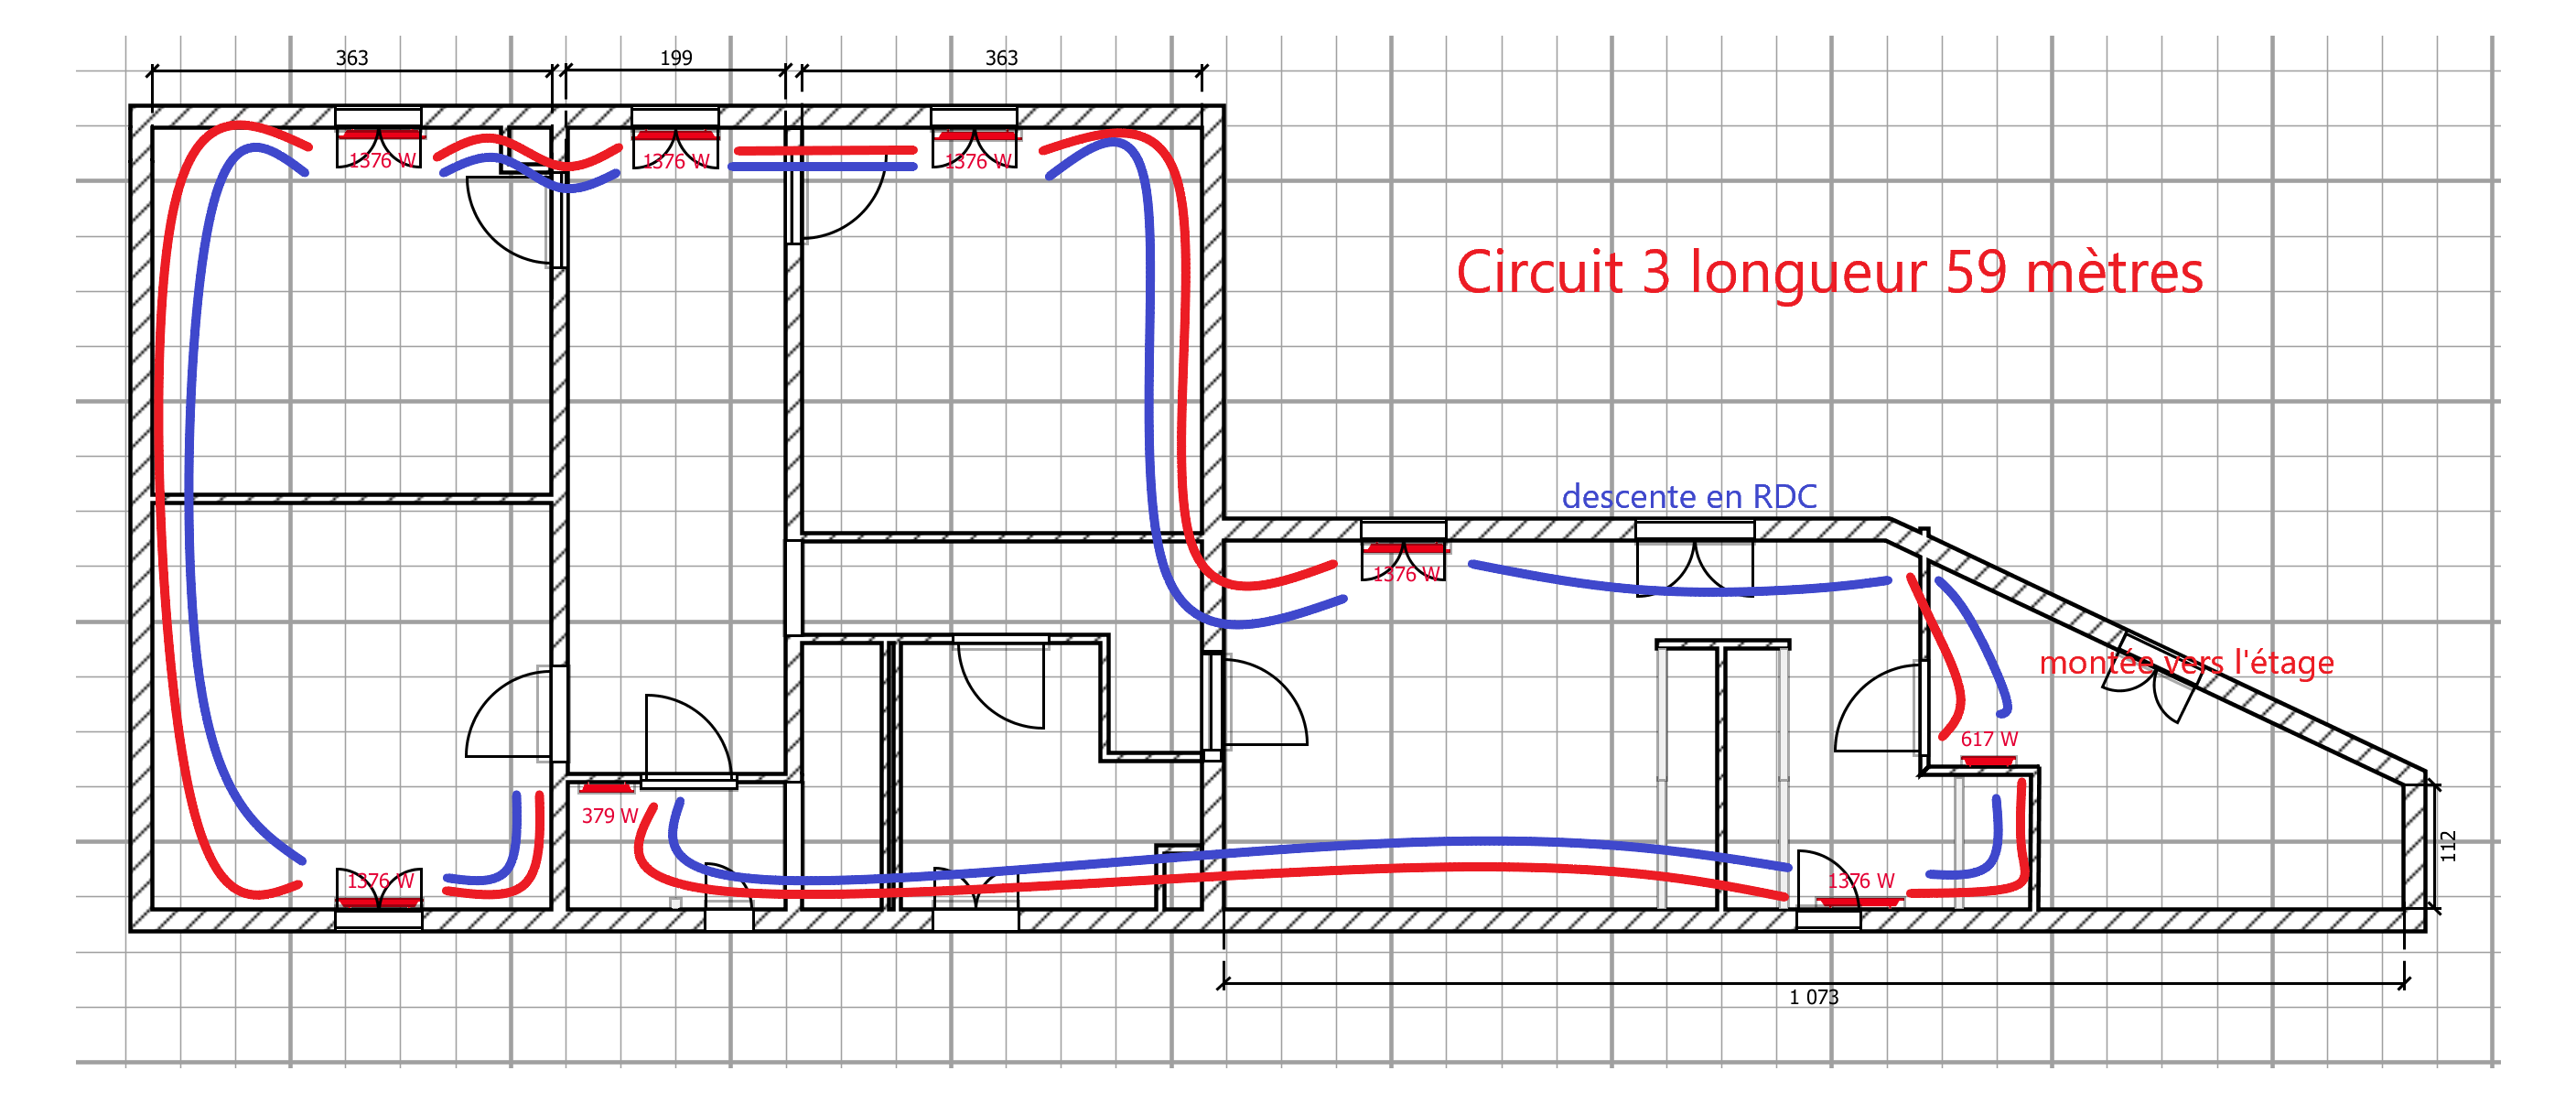 plan circuit 3 R+1.png, 247.48 kb, 2815 x 1205